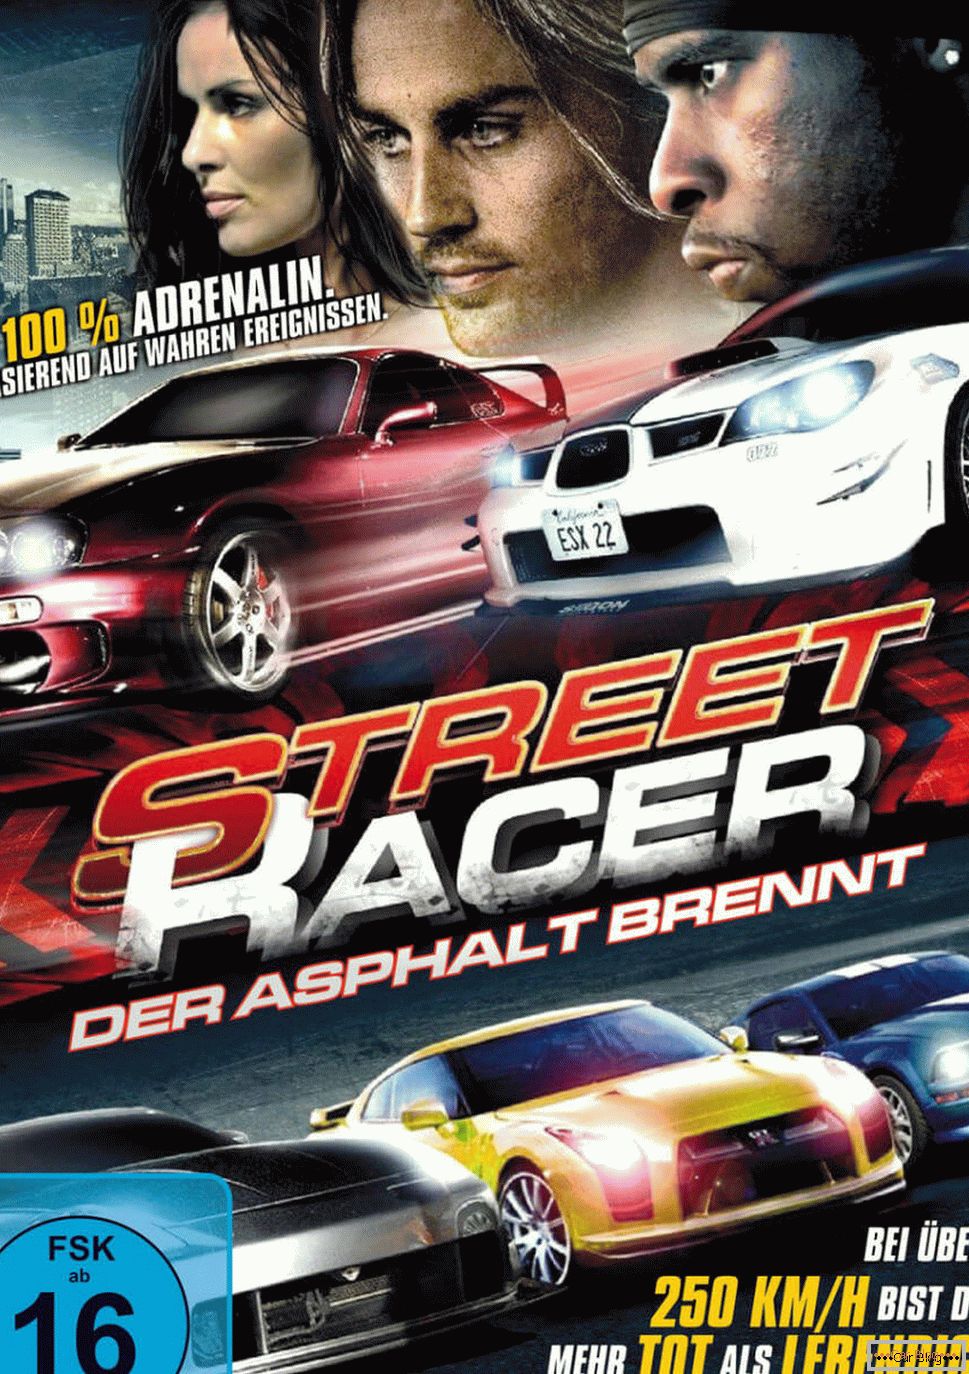 Affiche pour le film Street racer